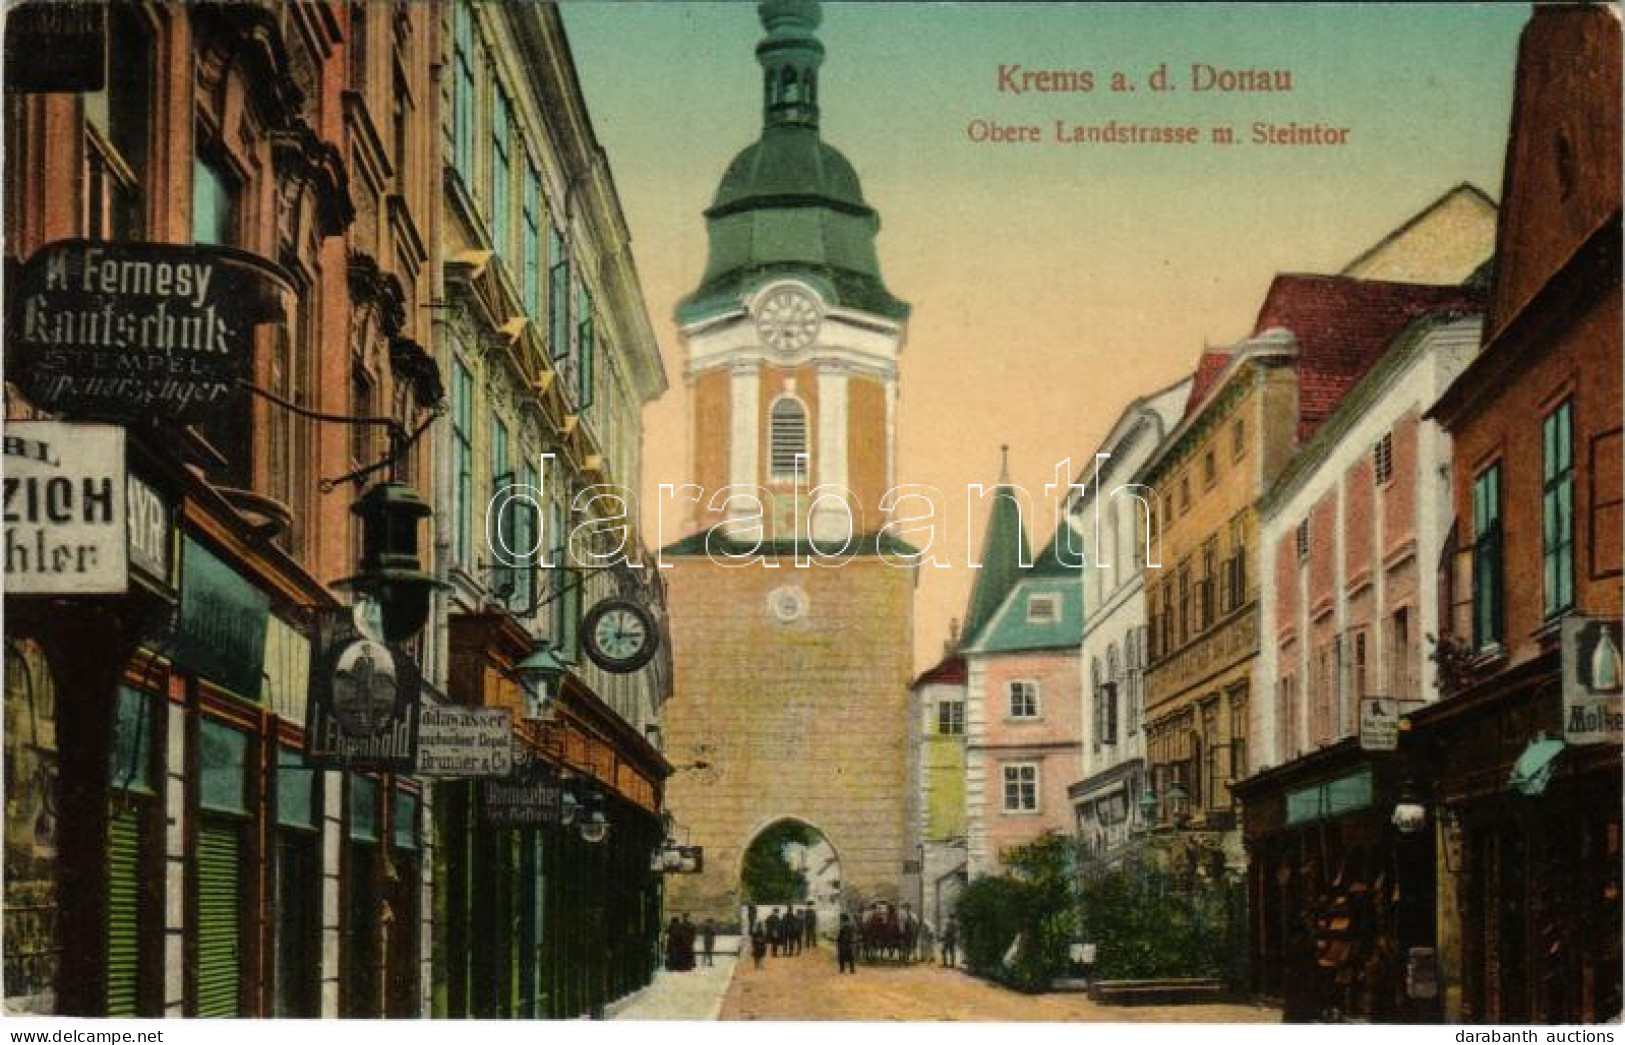 T2 1912 Krems An Der Donau, Obere Landstrasse M. Steintor / Street View, Gate, Shop Of K. Fernesy - Sin Clasificación